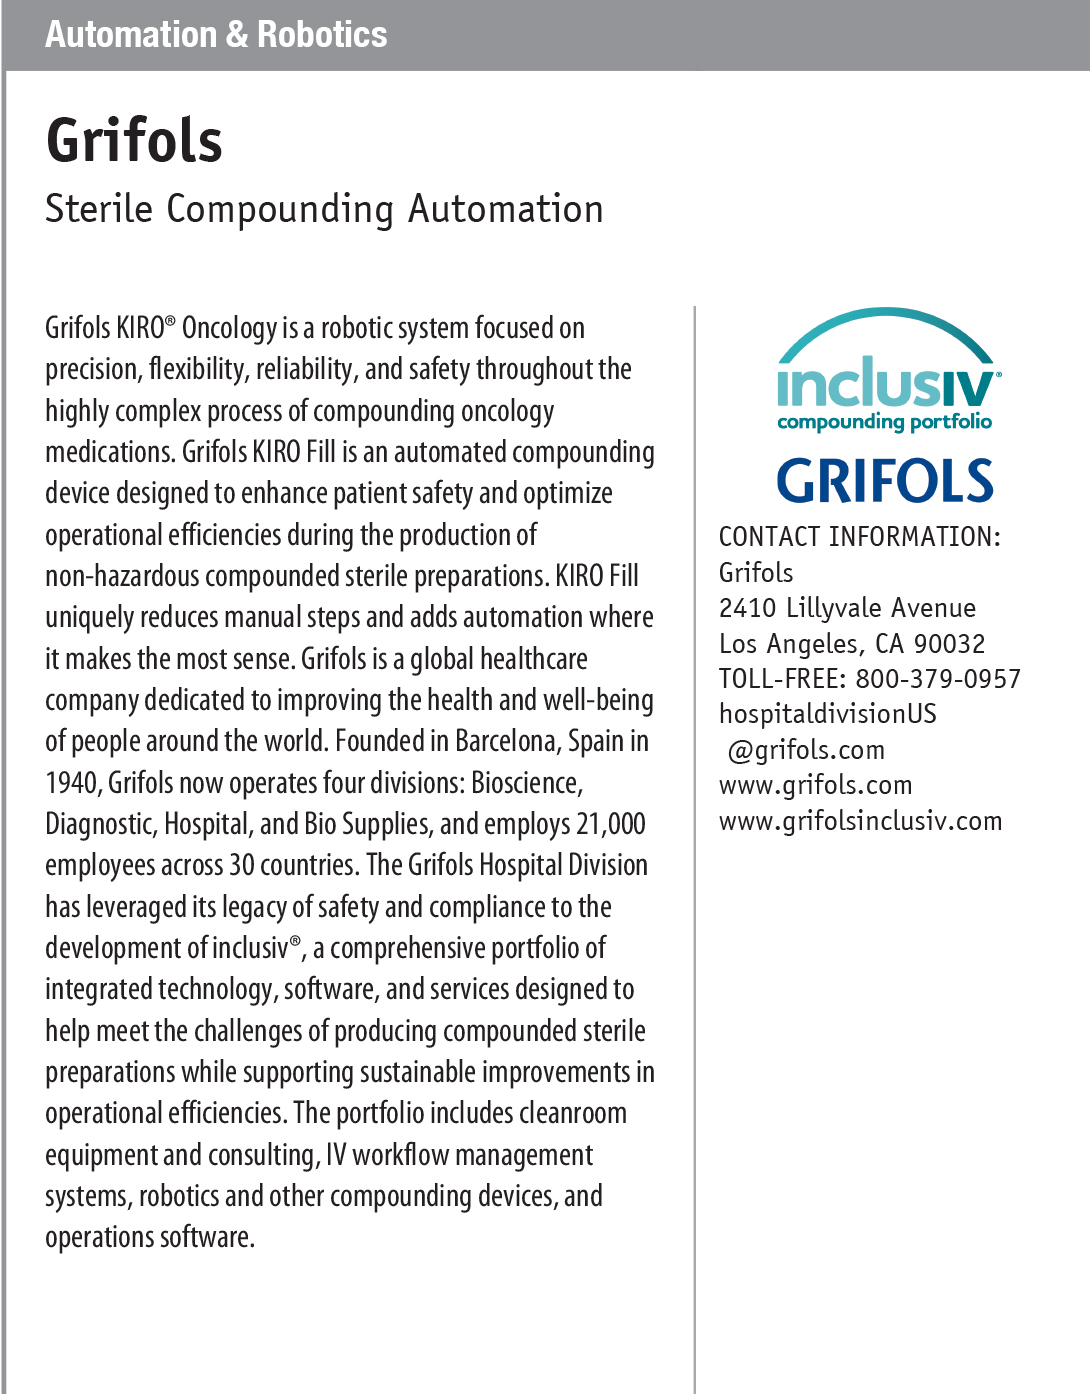 PROFILE_Automation-_-Robotics---Grifols-.jpg